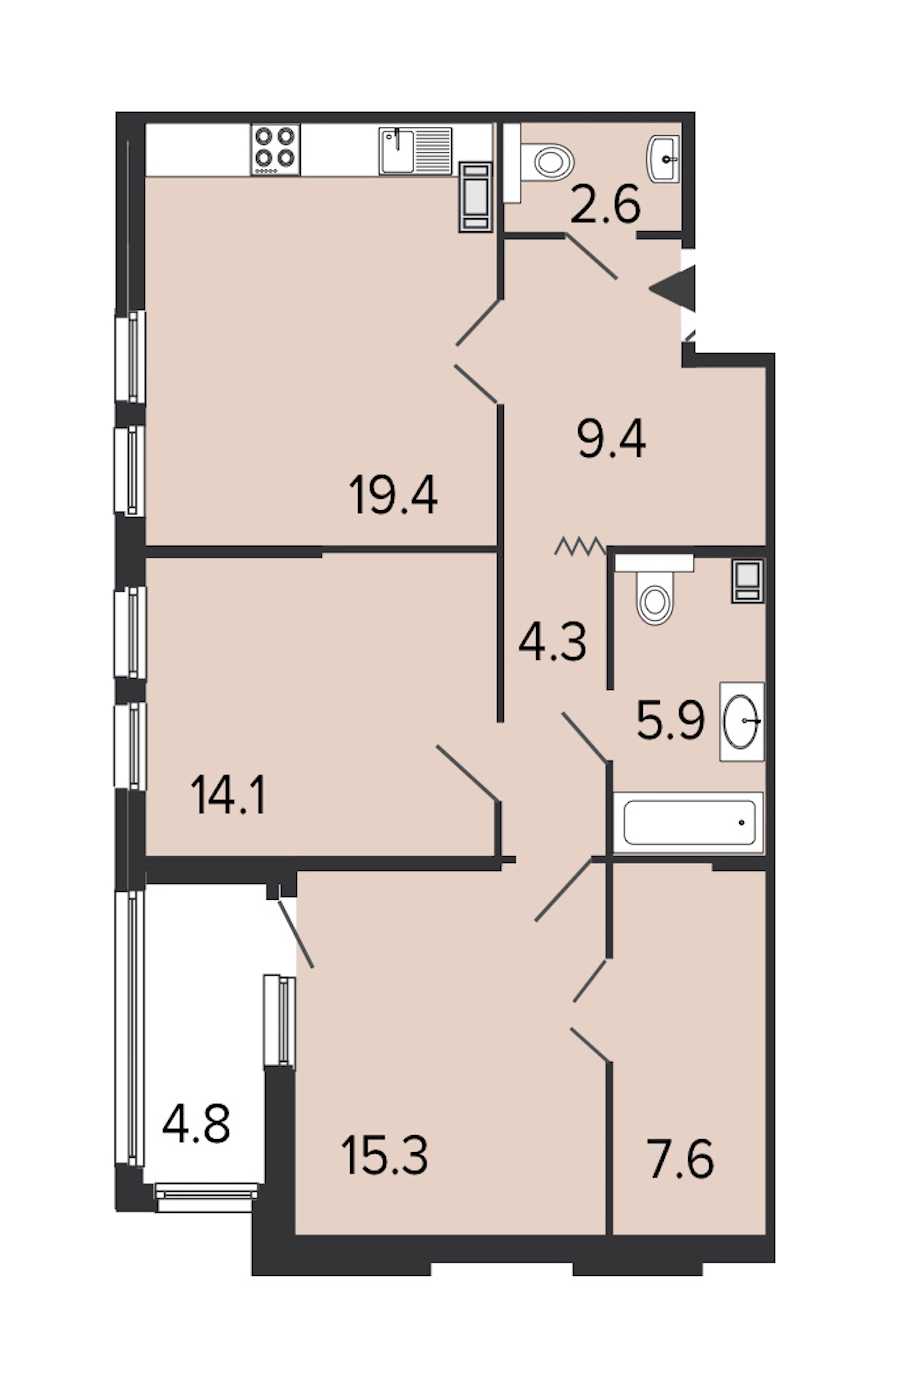 Двухкомнатная квартира в : площадь 78.6 м2 , этаж: 7 – купить в Санкт-Петербурге